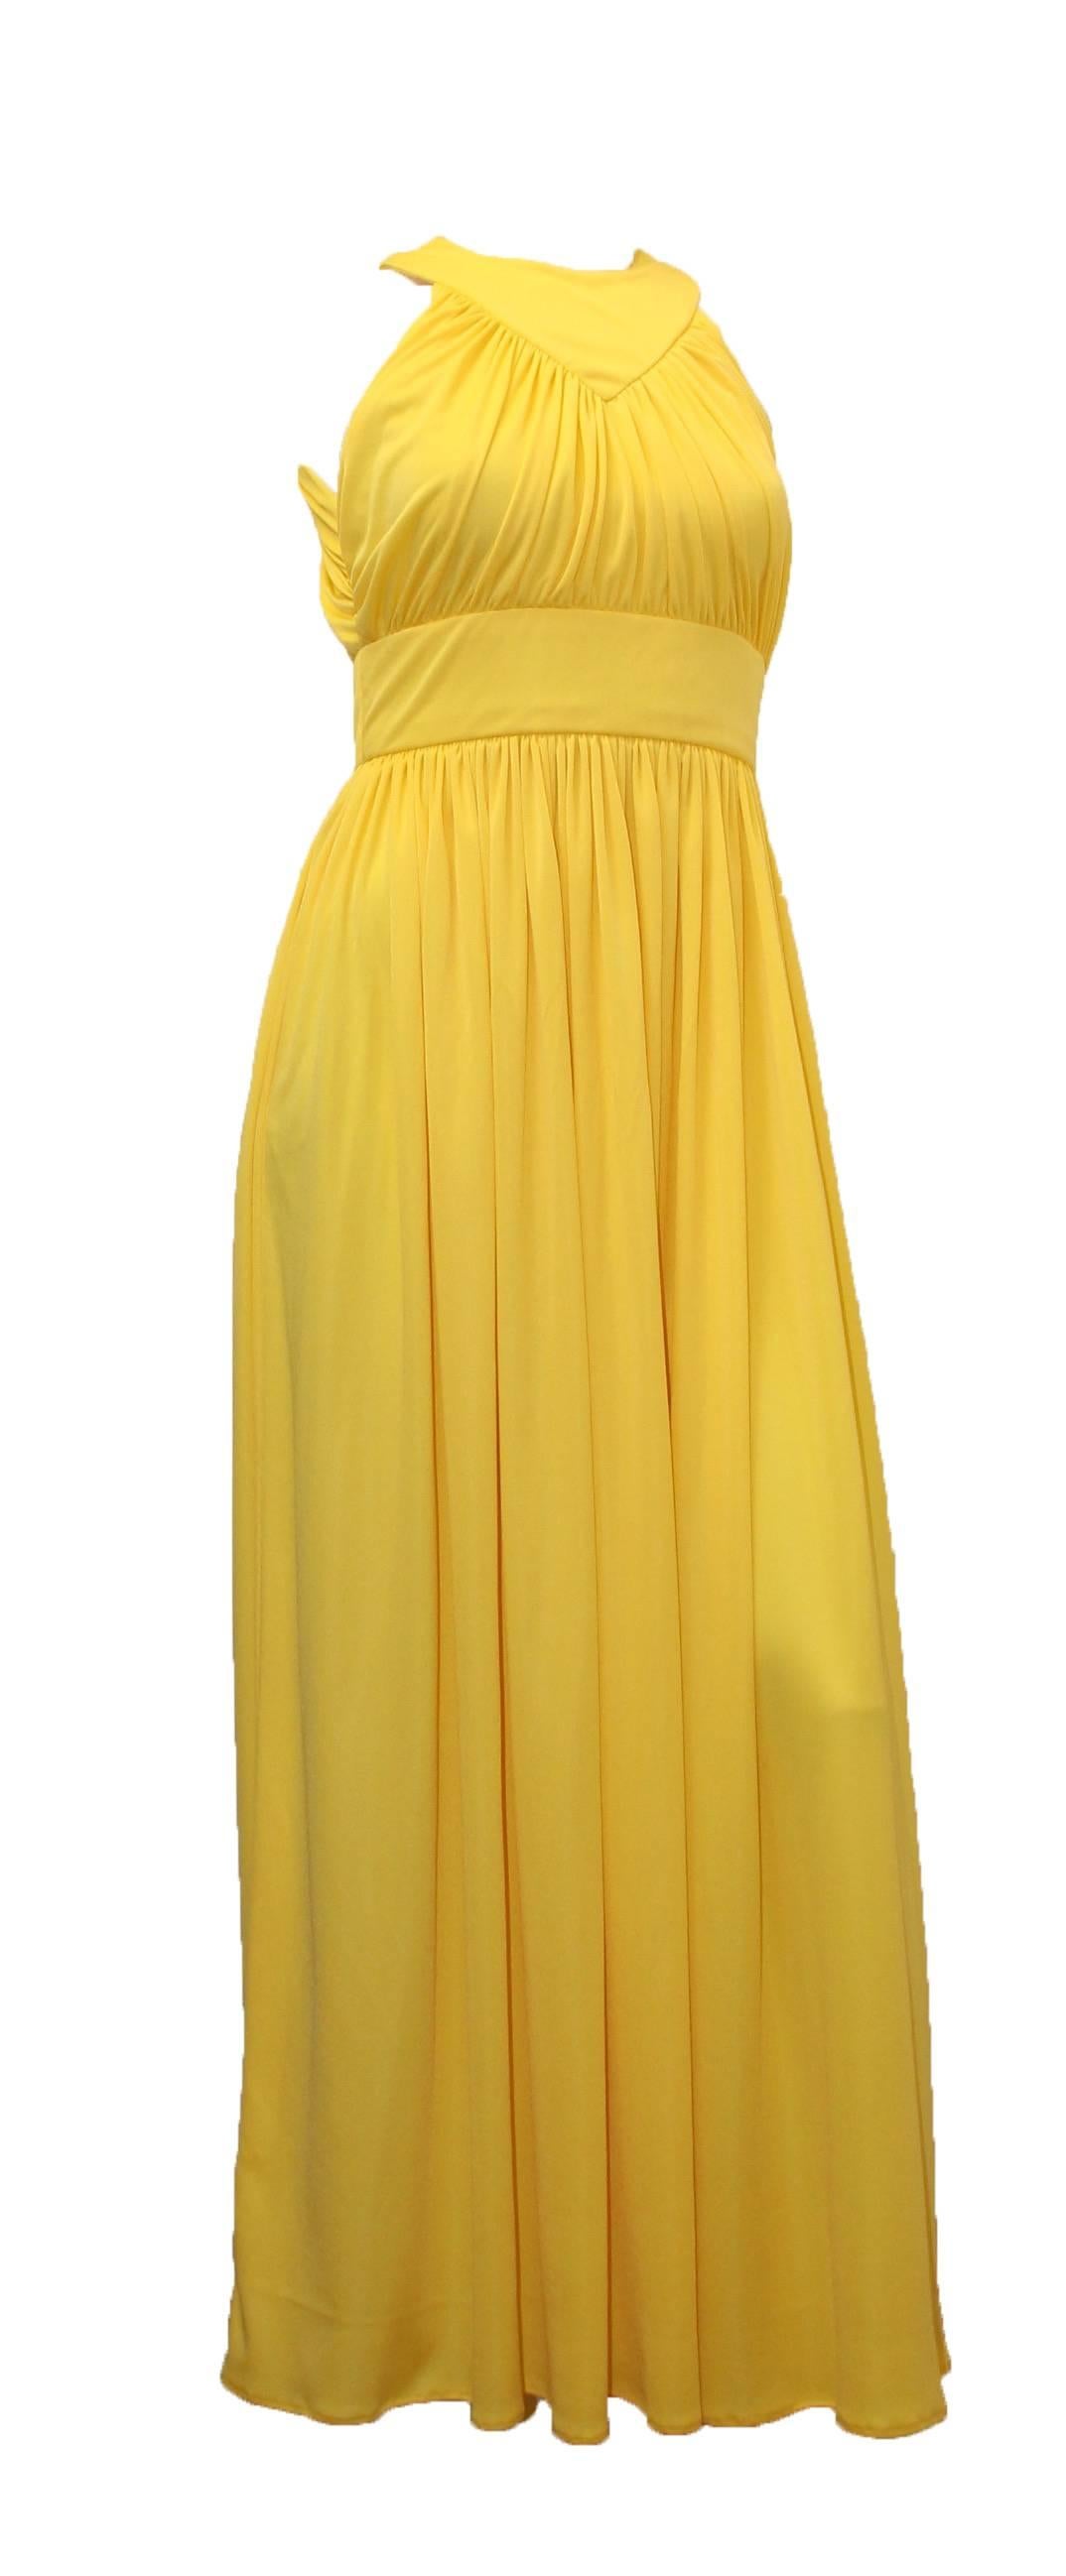 robe maxi en jersey jaune, taille empire, Saks Fifth Avenue des années 70. 